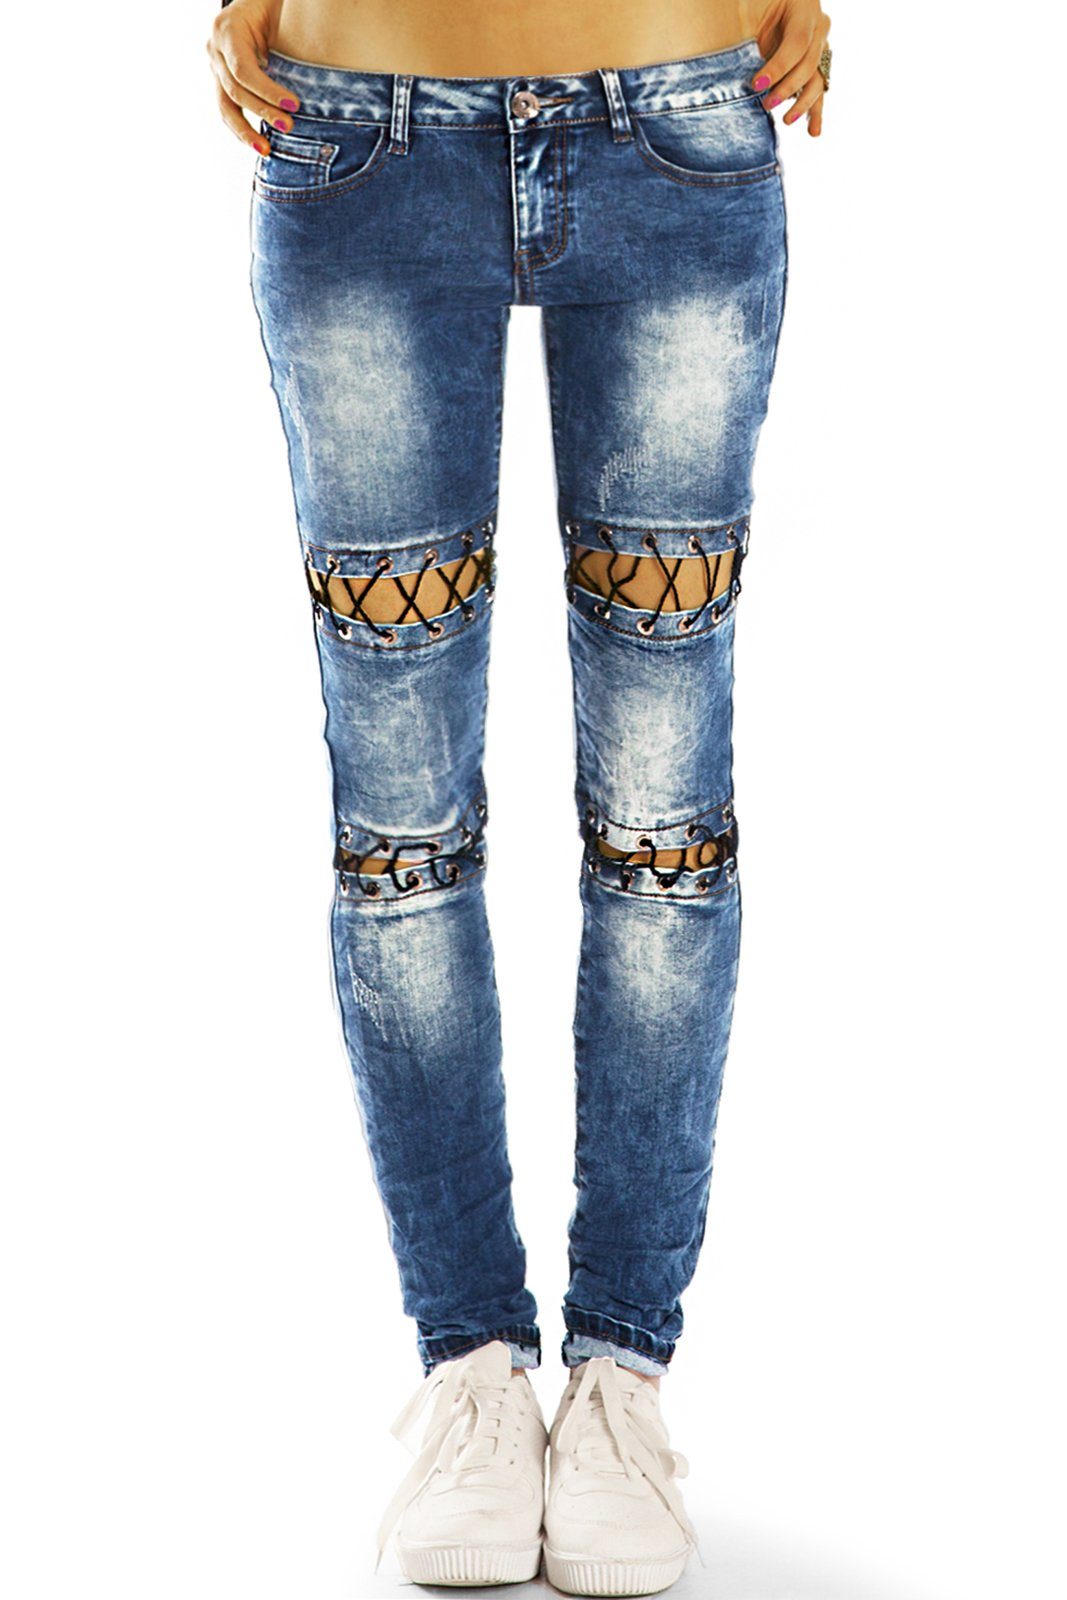 be styled Low-rise-Jeans Design Hüftjeans Hose Low Rise, auffällige Details - Damen - j31p mit Stretch-Anteil, 5-Pocket-Style